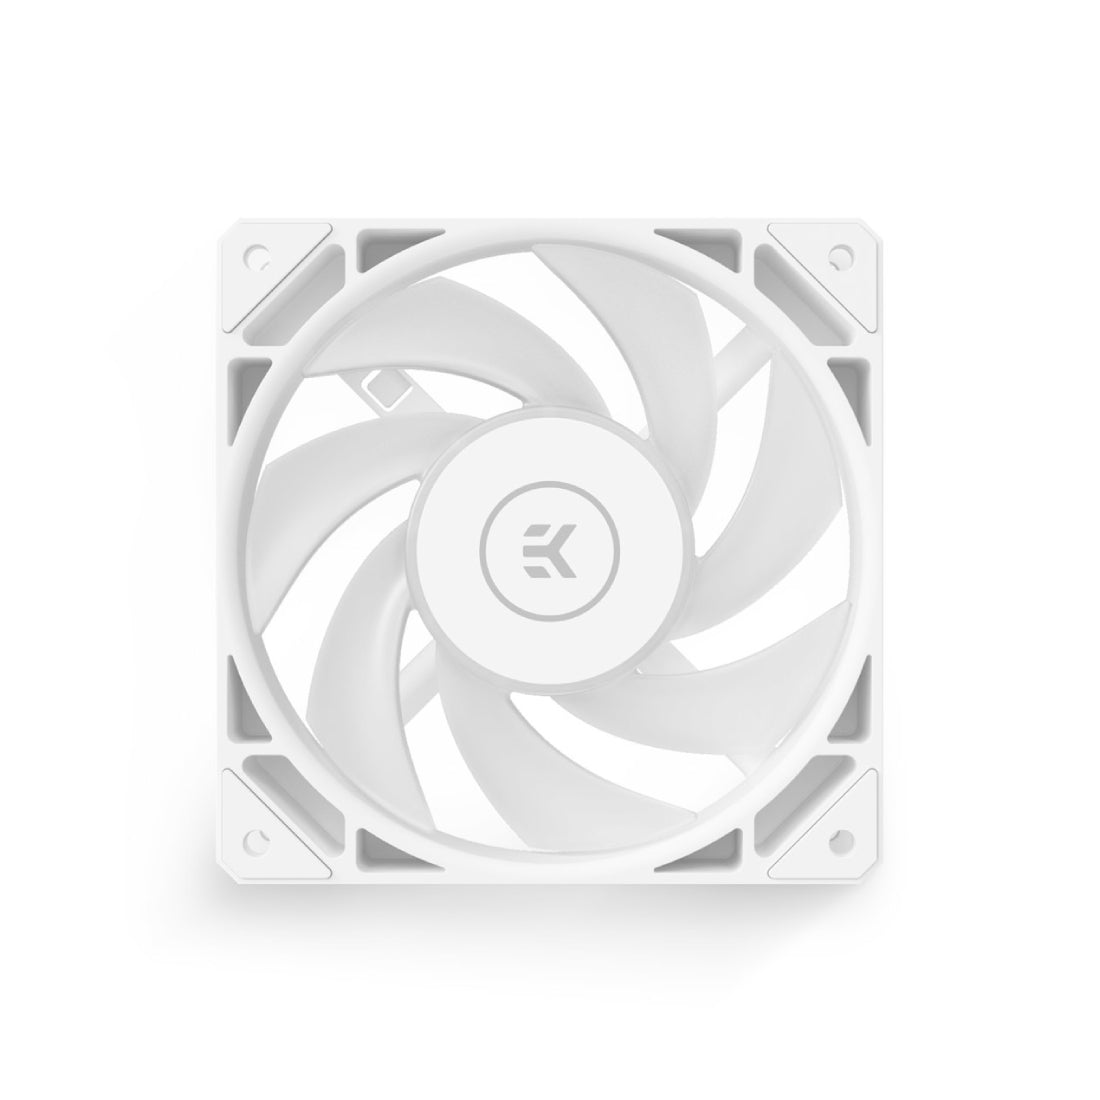 EKWB EK-Loop Fan FPT 10 D-RGB Single Fan - White - مروحة تبريد - Store 974 | ستور ٩٧٤